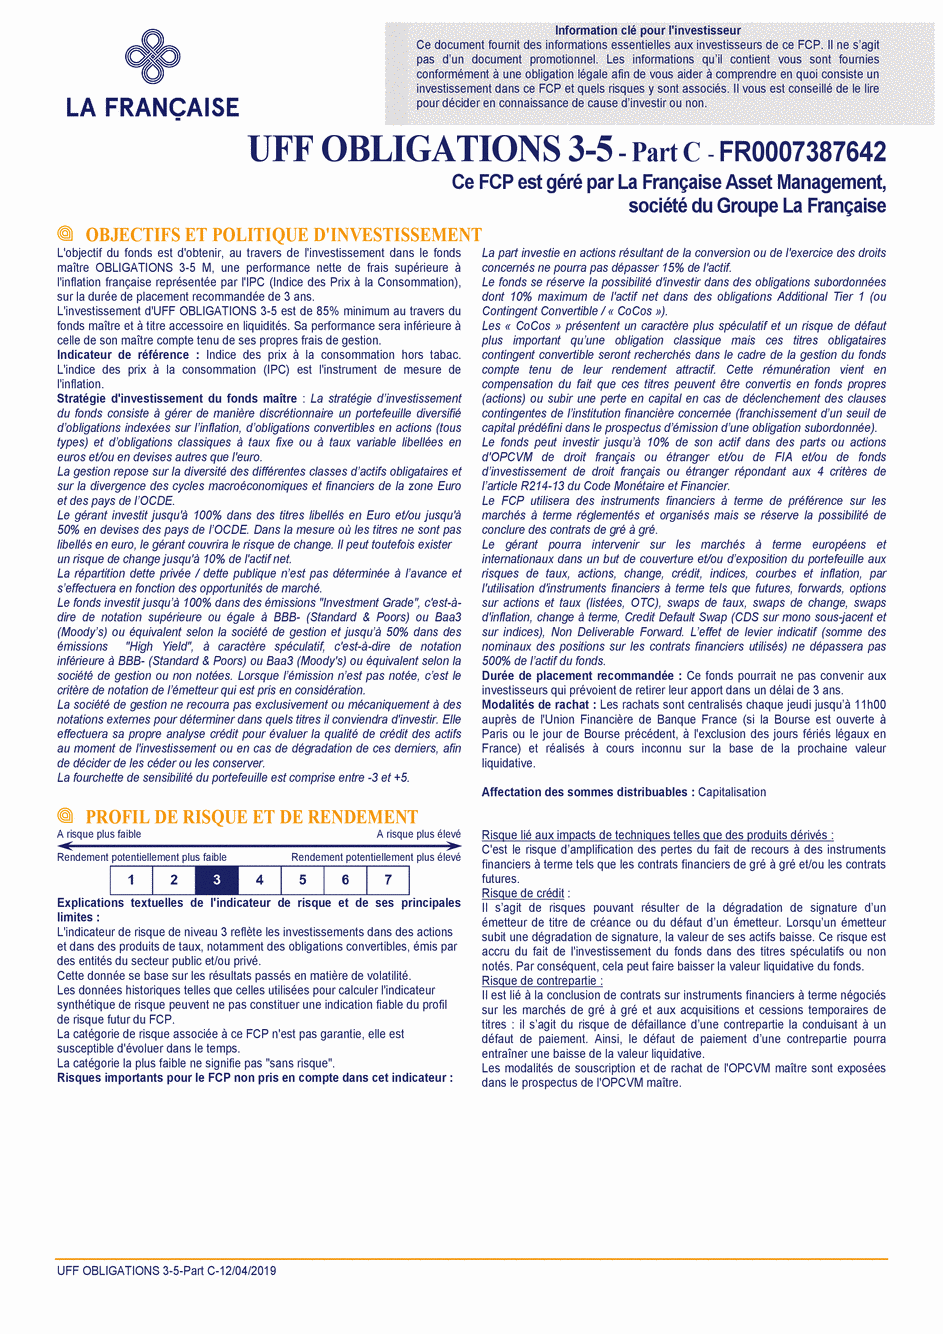 DICI UFF Obligations 3-5 (Part C) - 13/02/2019 - Français